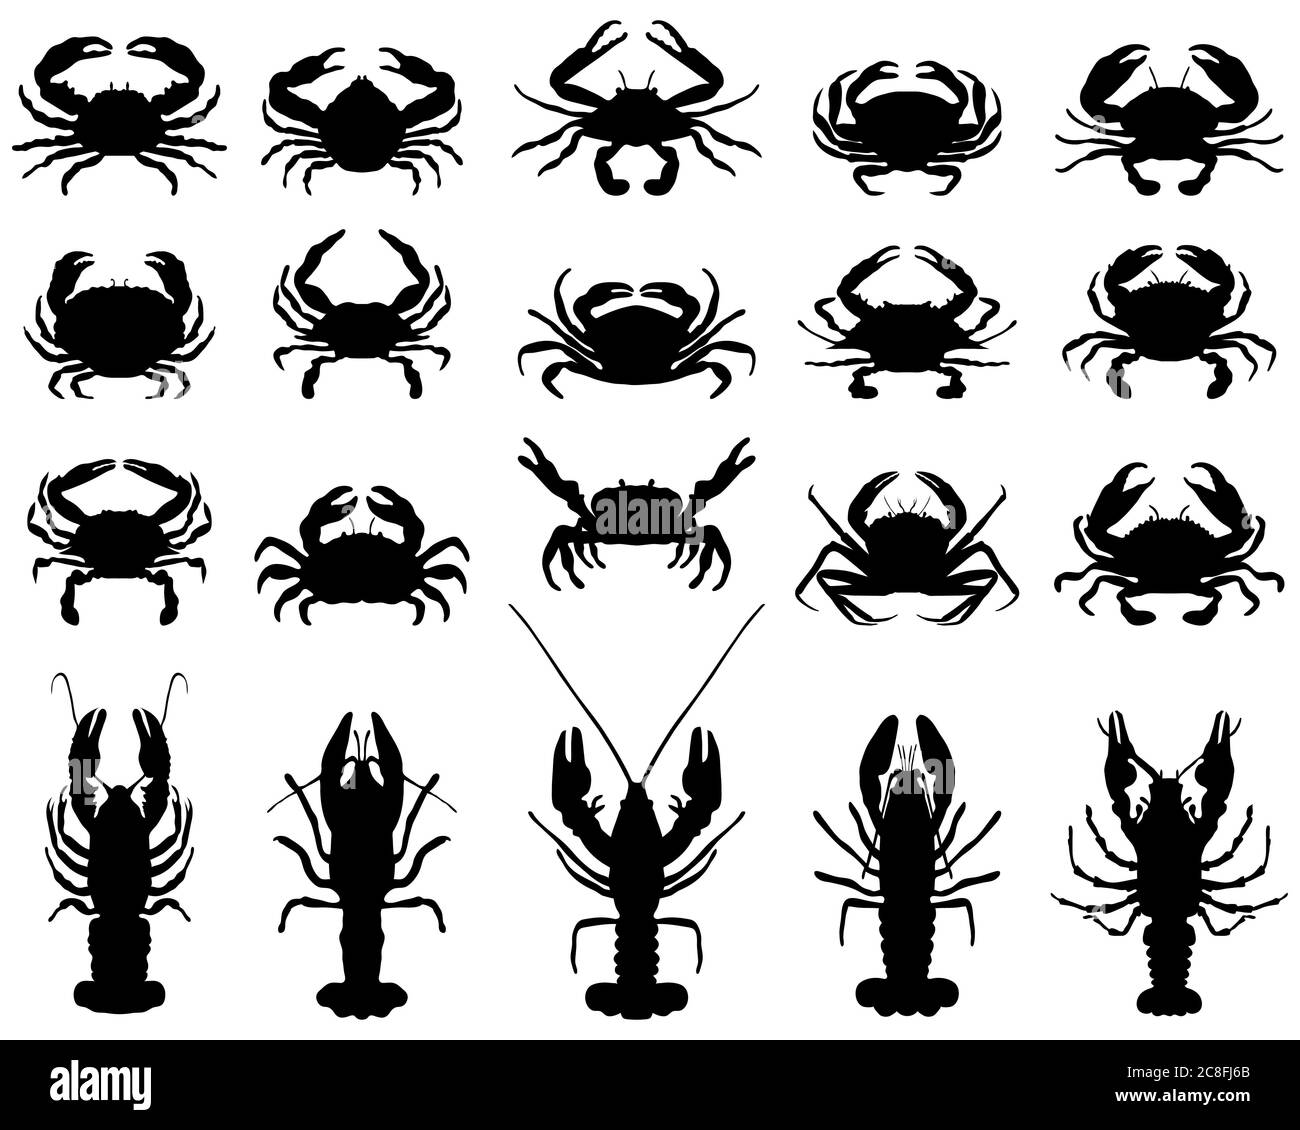 Schwarze Silhouetten von Krebsen und Krabben auf weißem Hintergrund Stockfoto